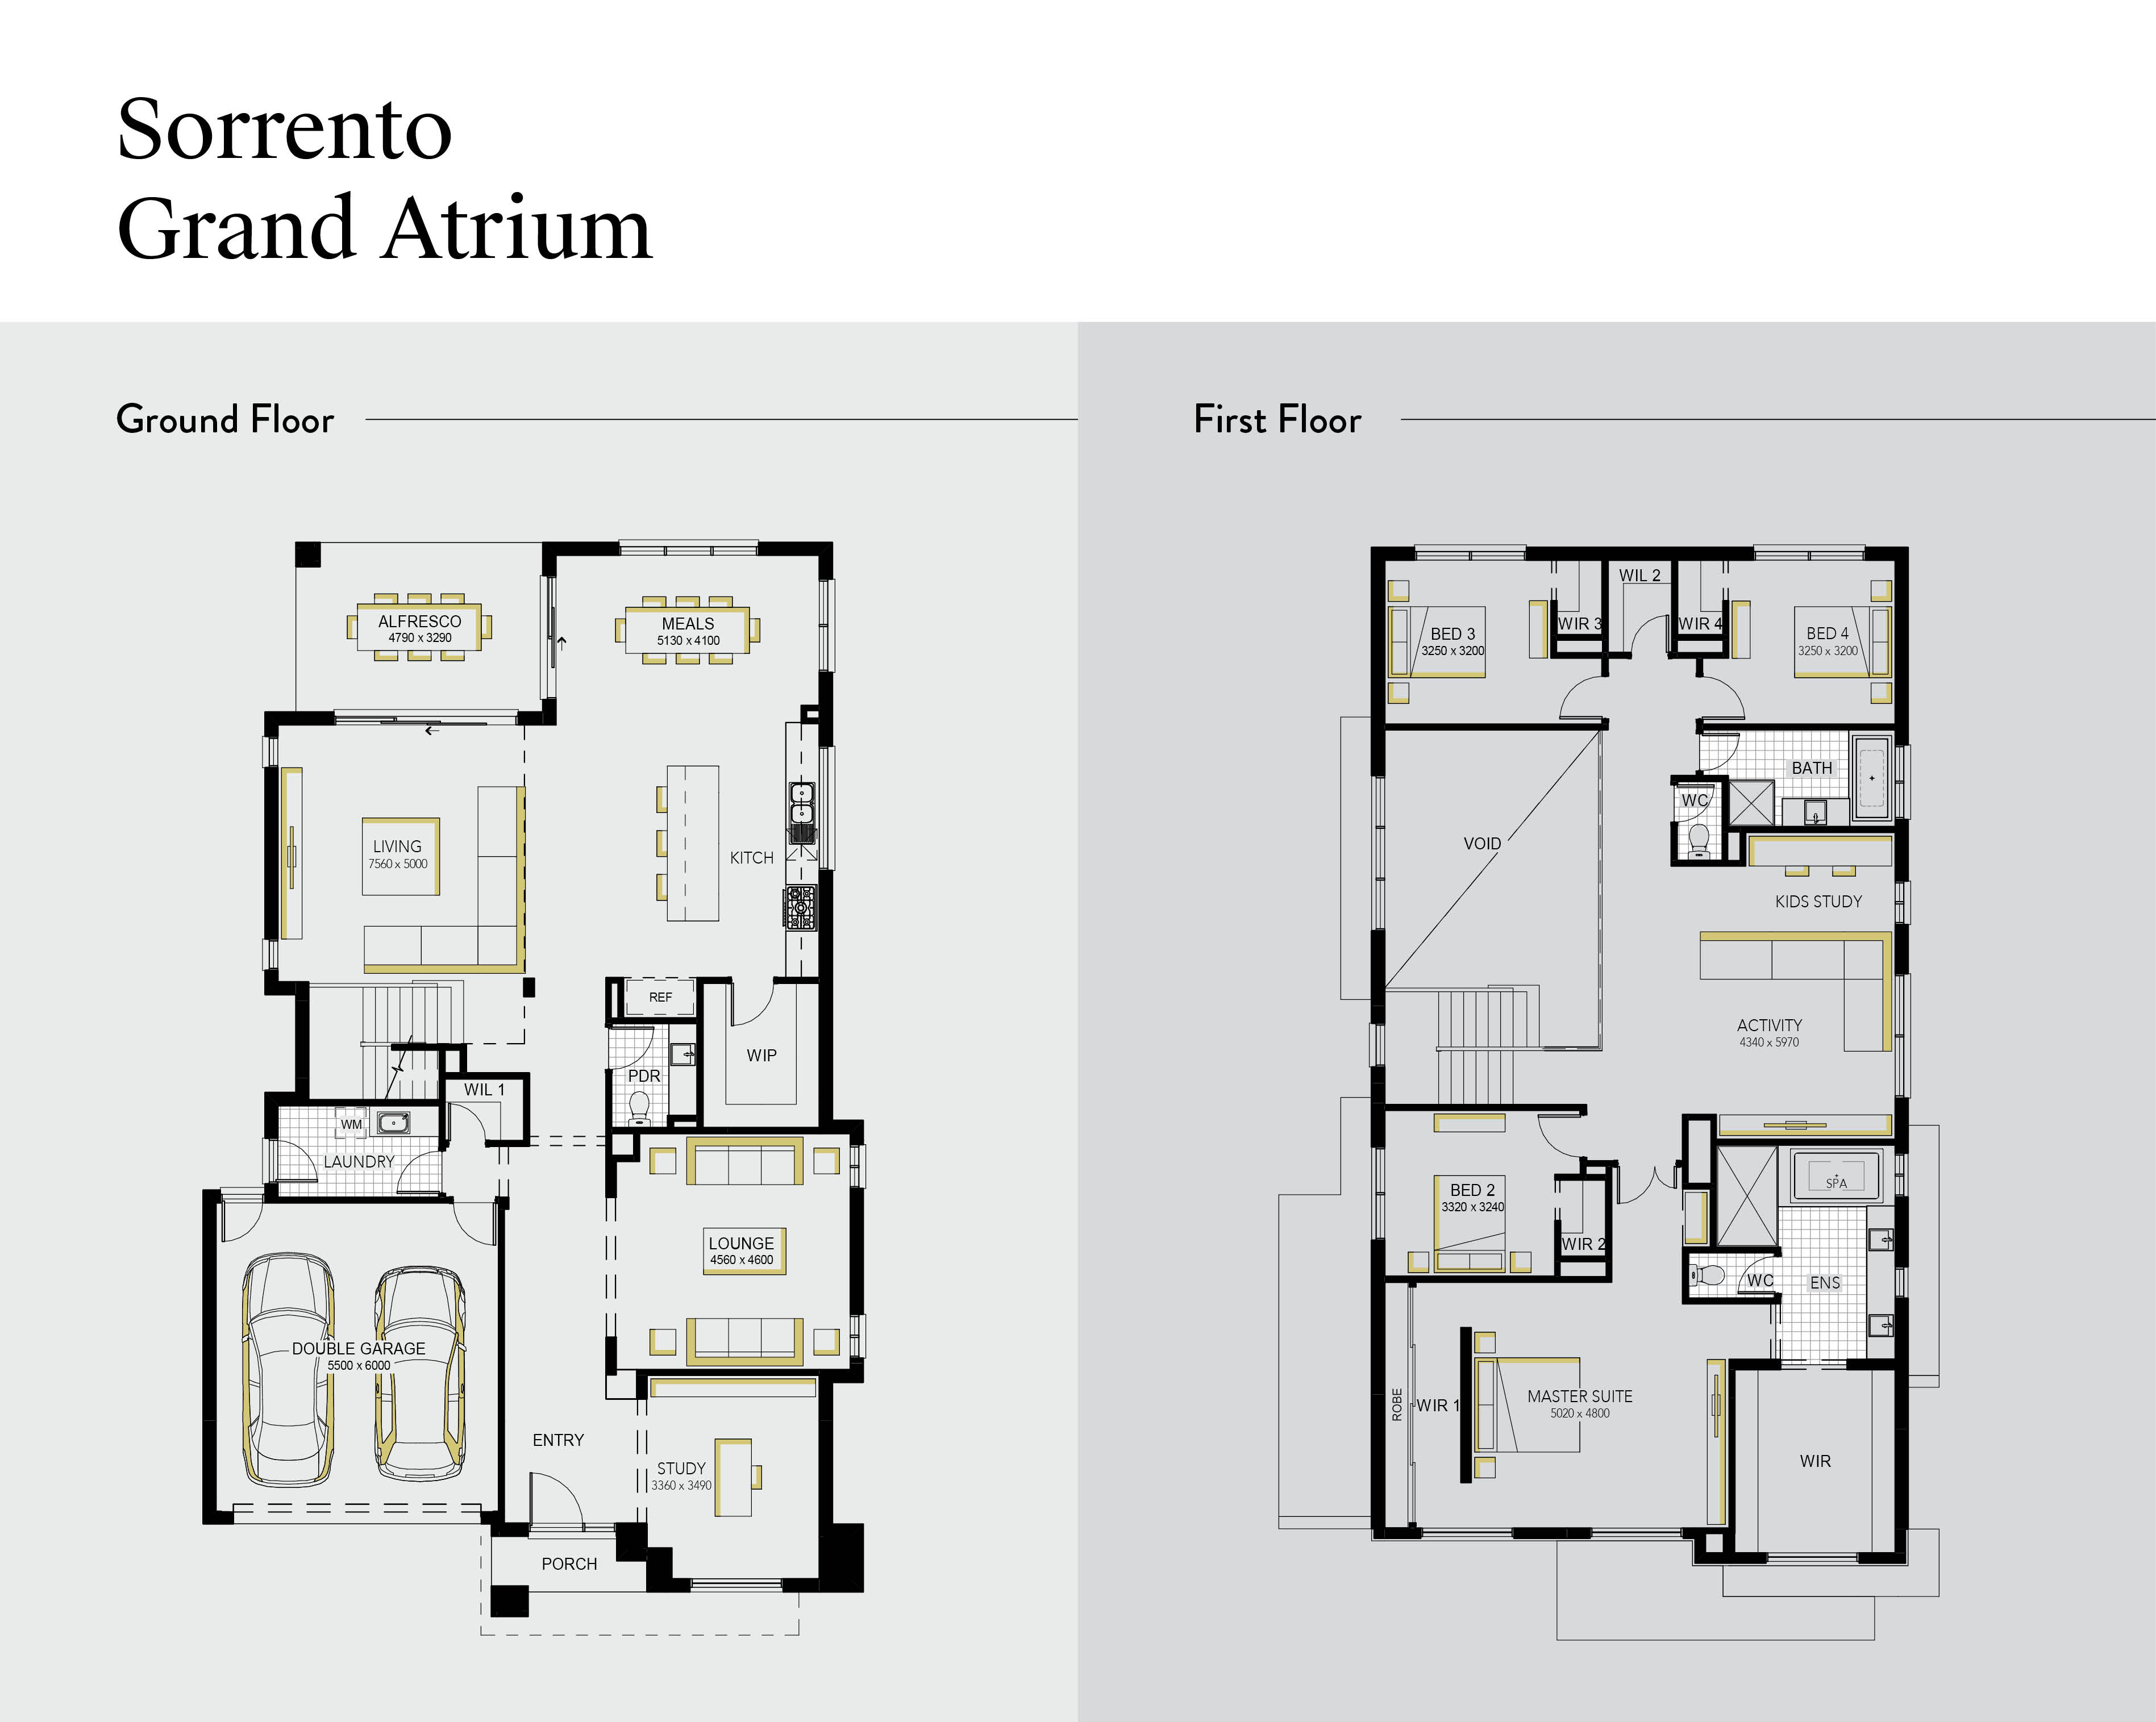 Sorrento Grand Atrium 47: Featuring a Double Height Atrium over Living Space